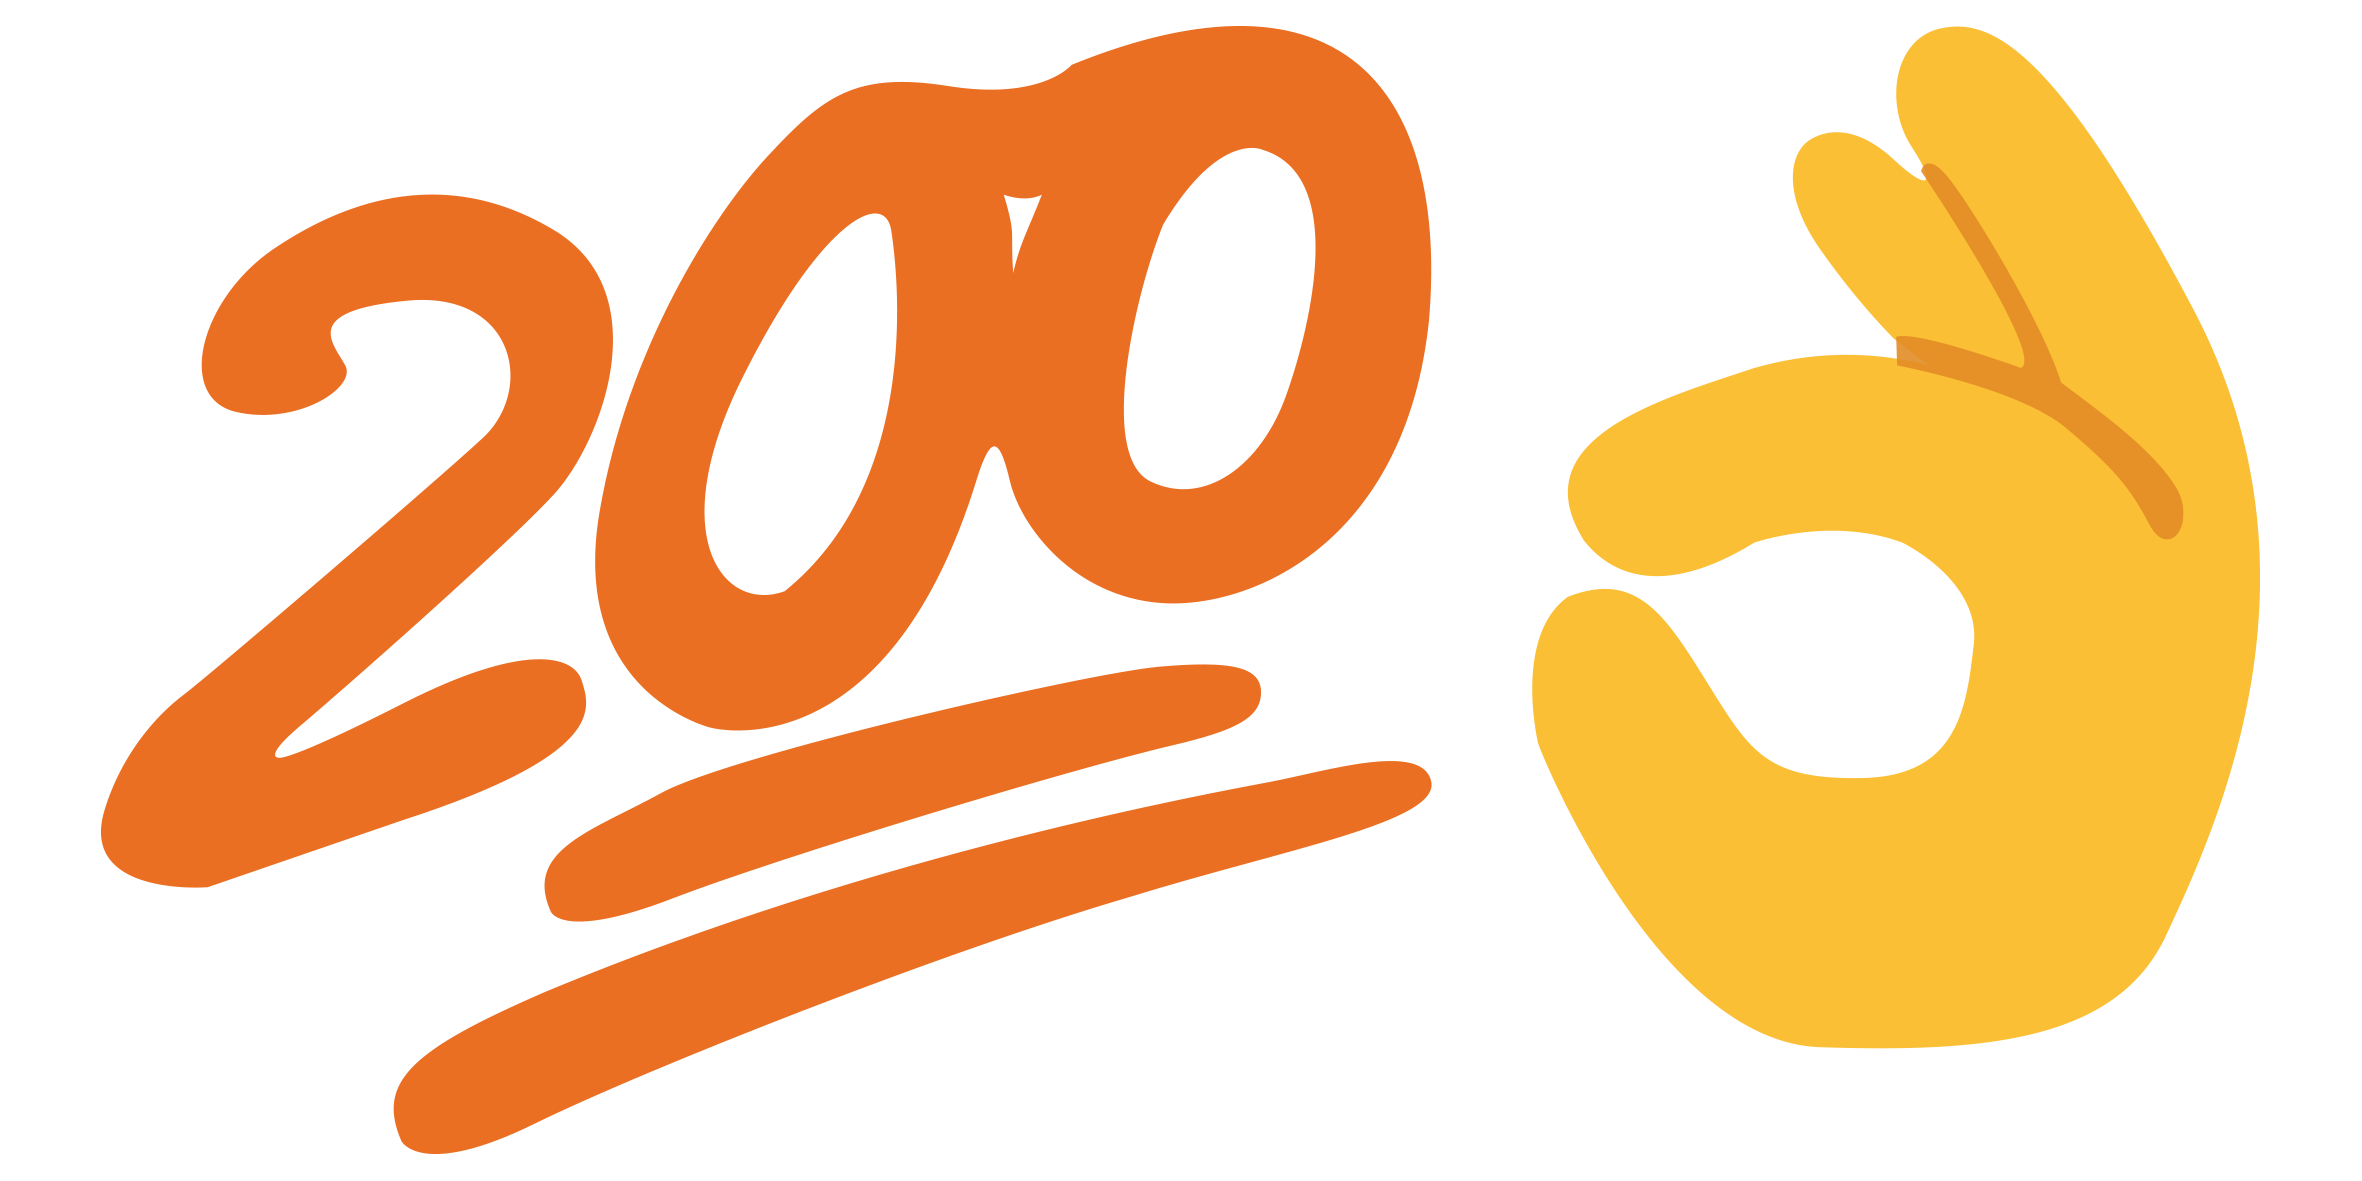 200 OK logo